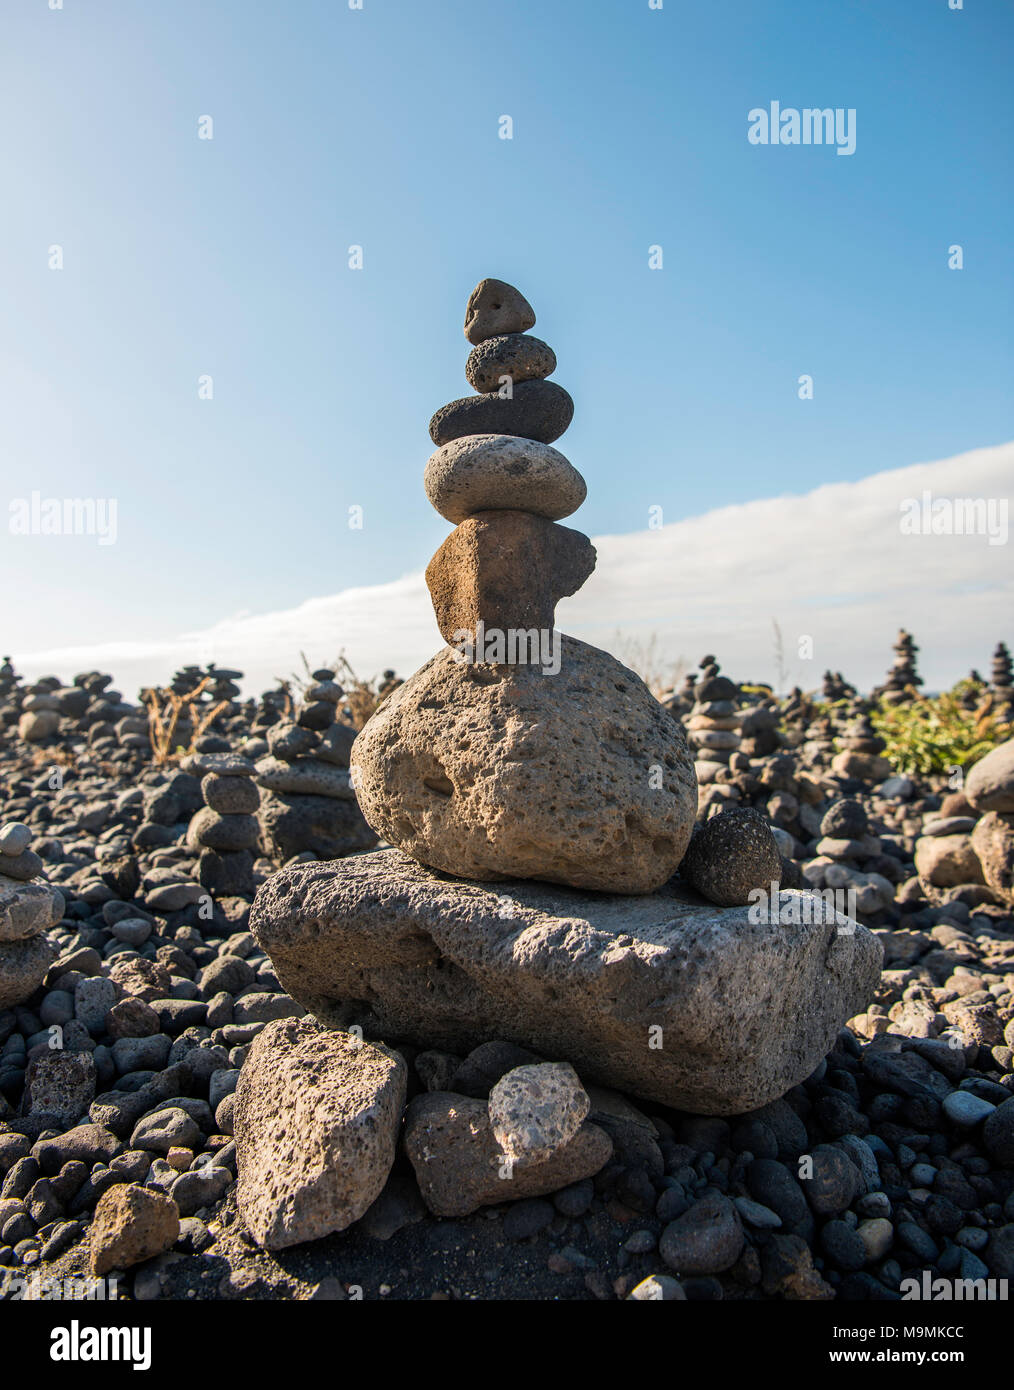 Piedras apiladas, Cairns, pirámides, Playa del Castillo, Puerto de la Cruz, Tenerife, España Foto de stock